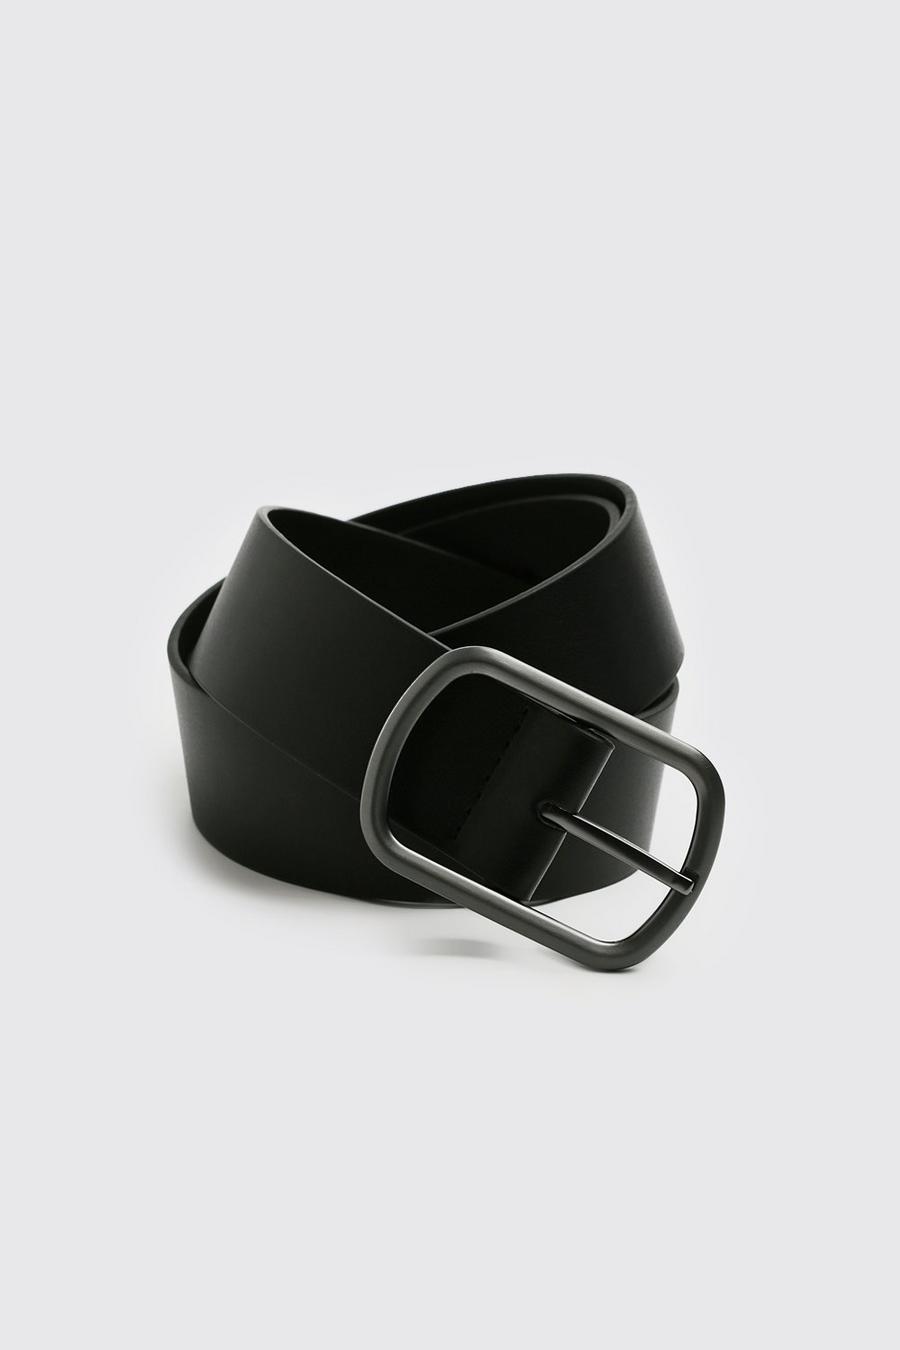 Black Faux Leather Belt image number 1